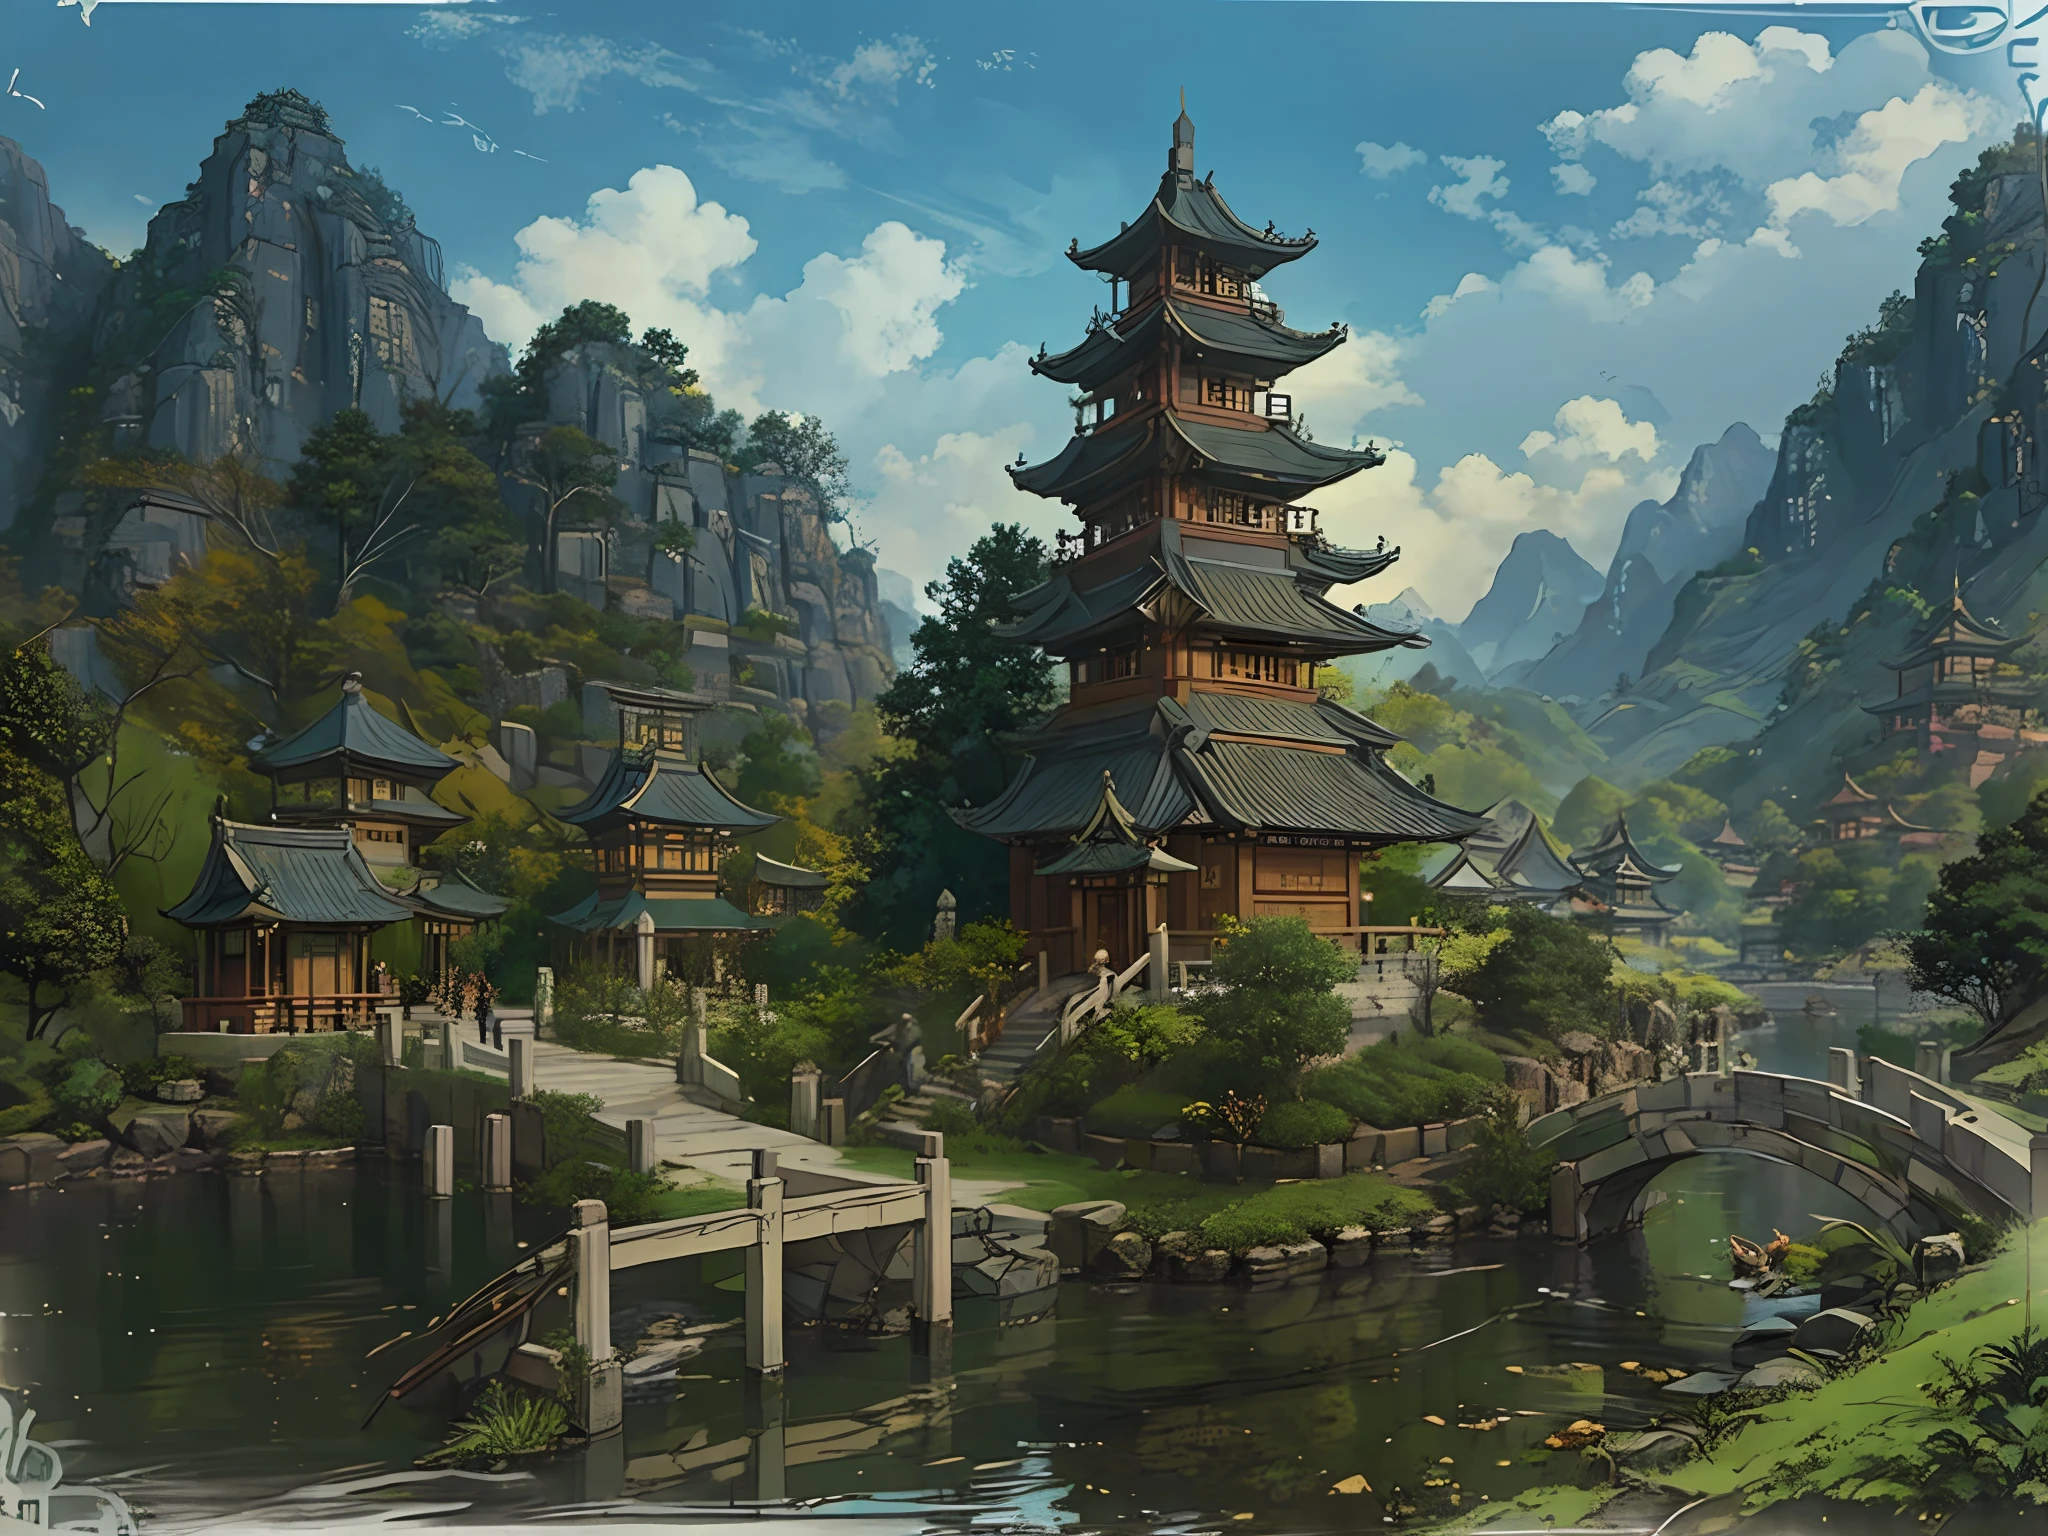 橋と塔のある中国の村の風景, 風景画, G リュリアンアートスタイル, 寺院の背景, 風景ゲームコンセプトアート, 詳細な風景 - 幅 672, 美しいアートワークのイラスト, zen 寺院の背景,